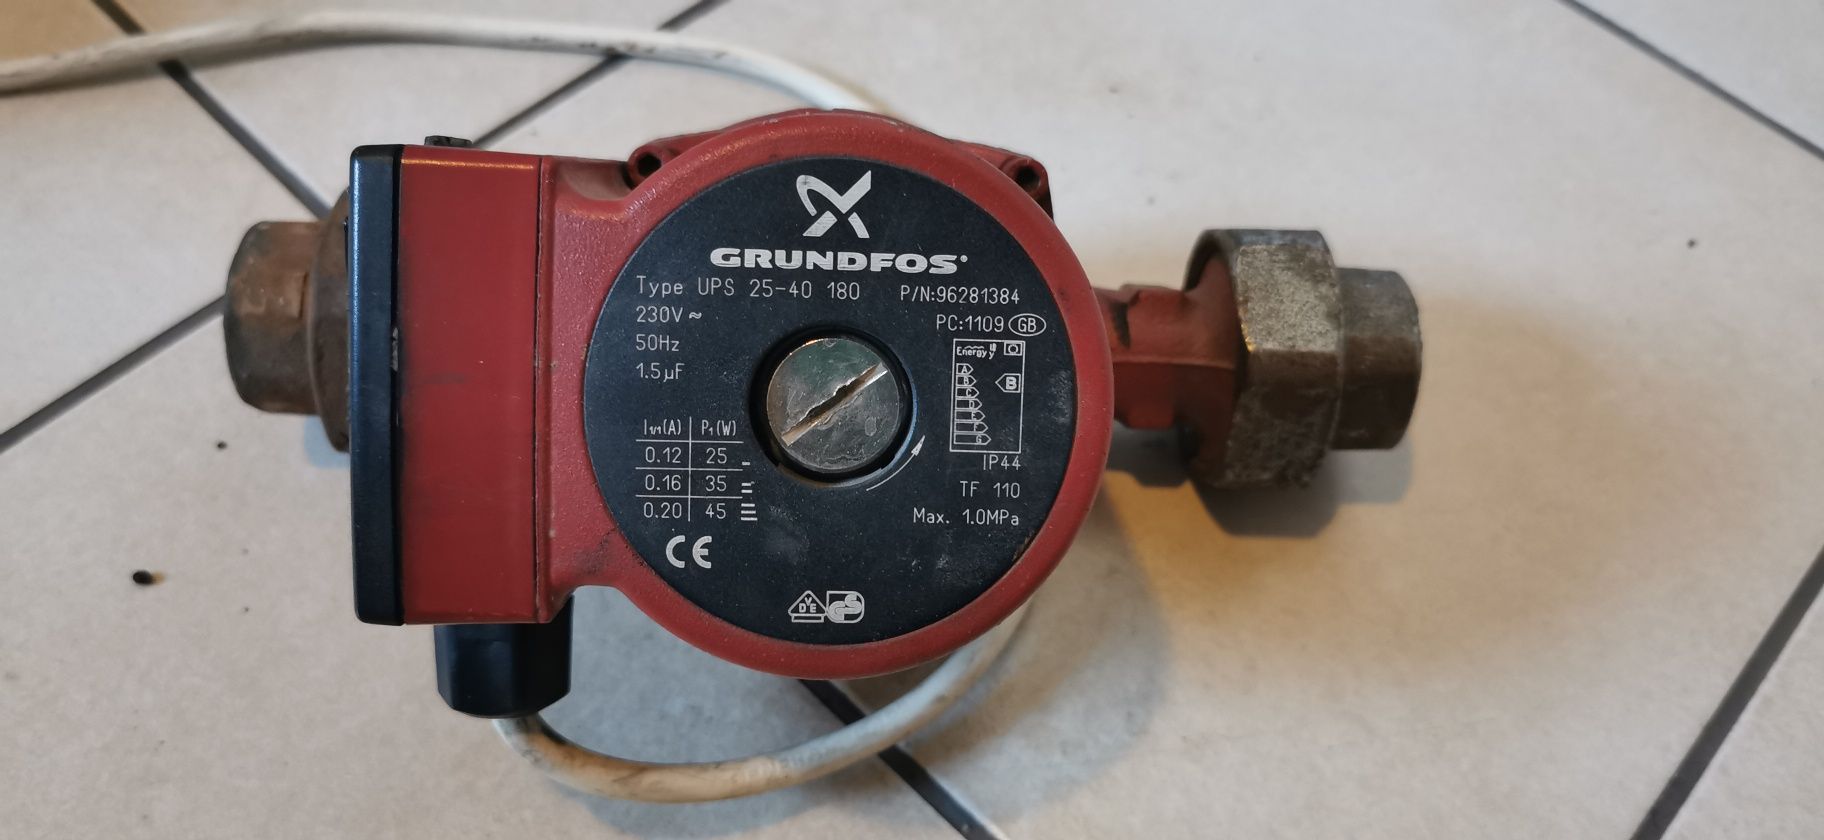 Pompa Grundfos wraz ze śrubunkami.